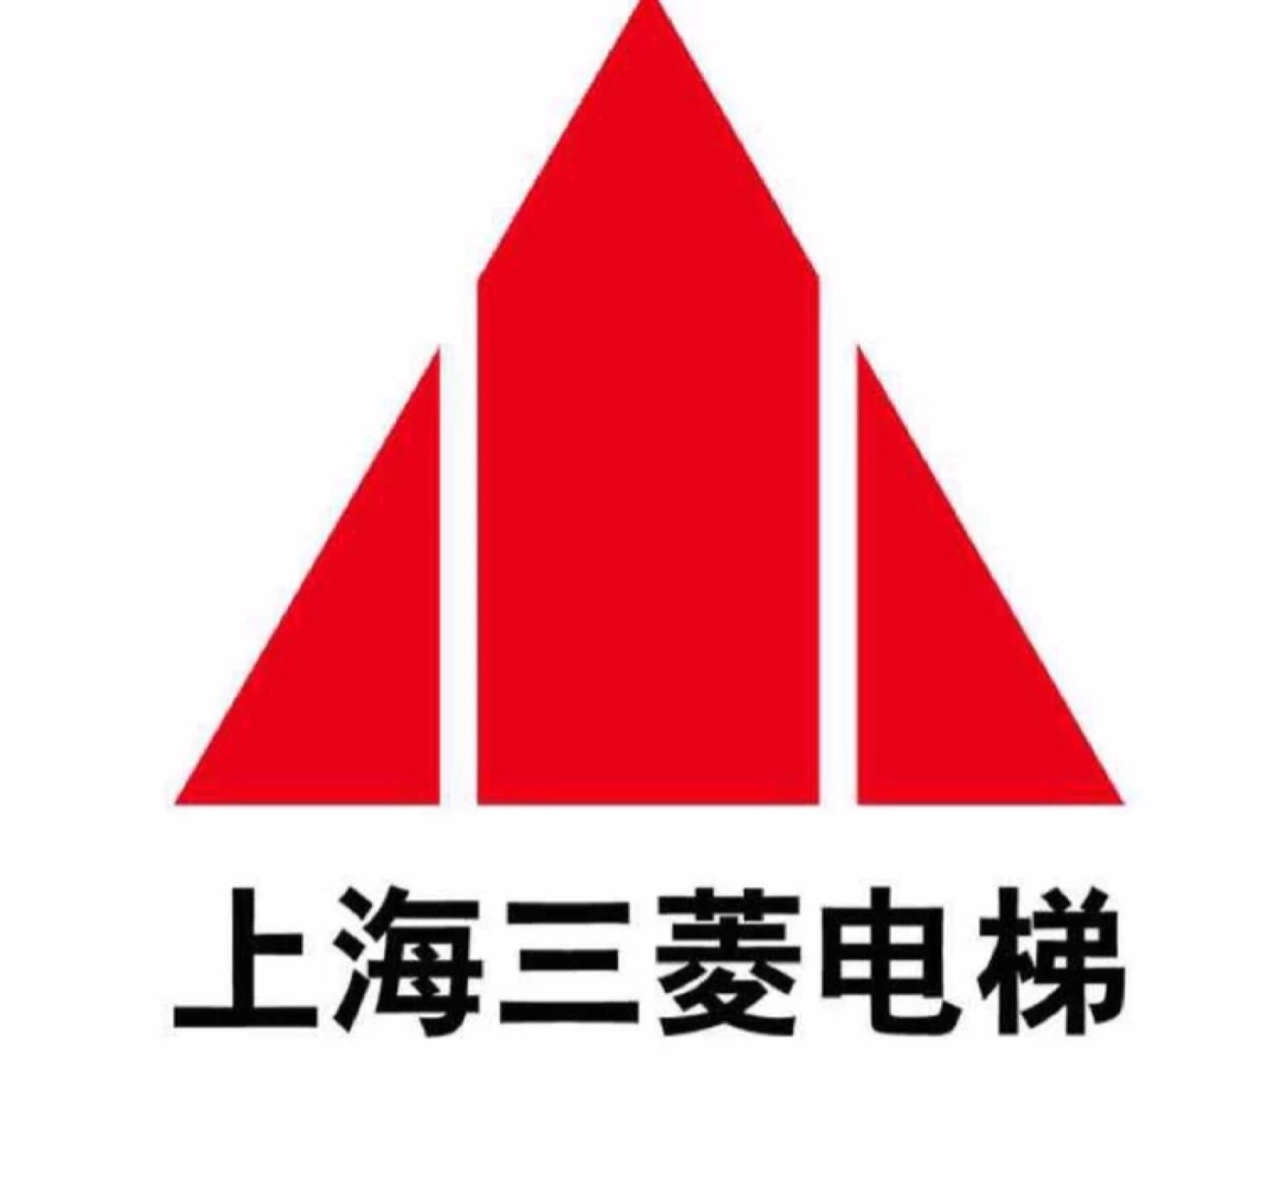 上海三菱电梯有限公司中山分公司